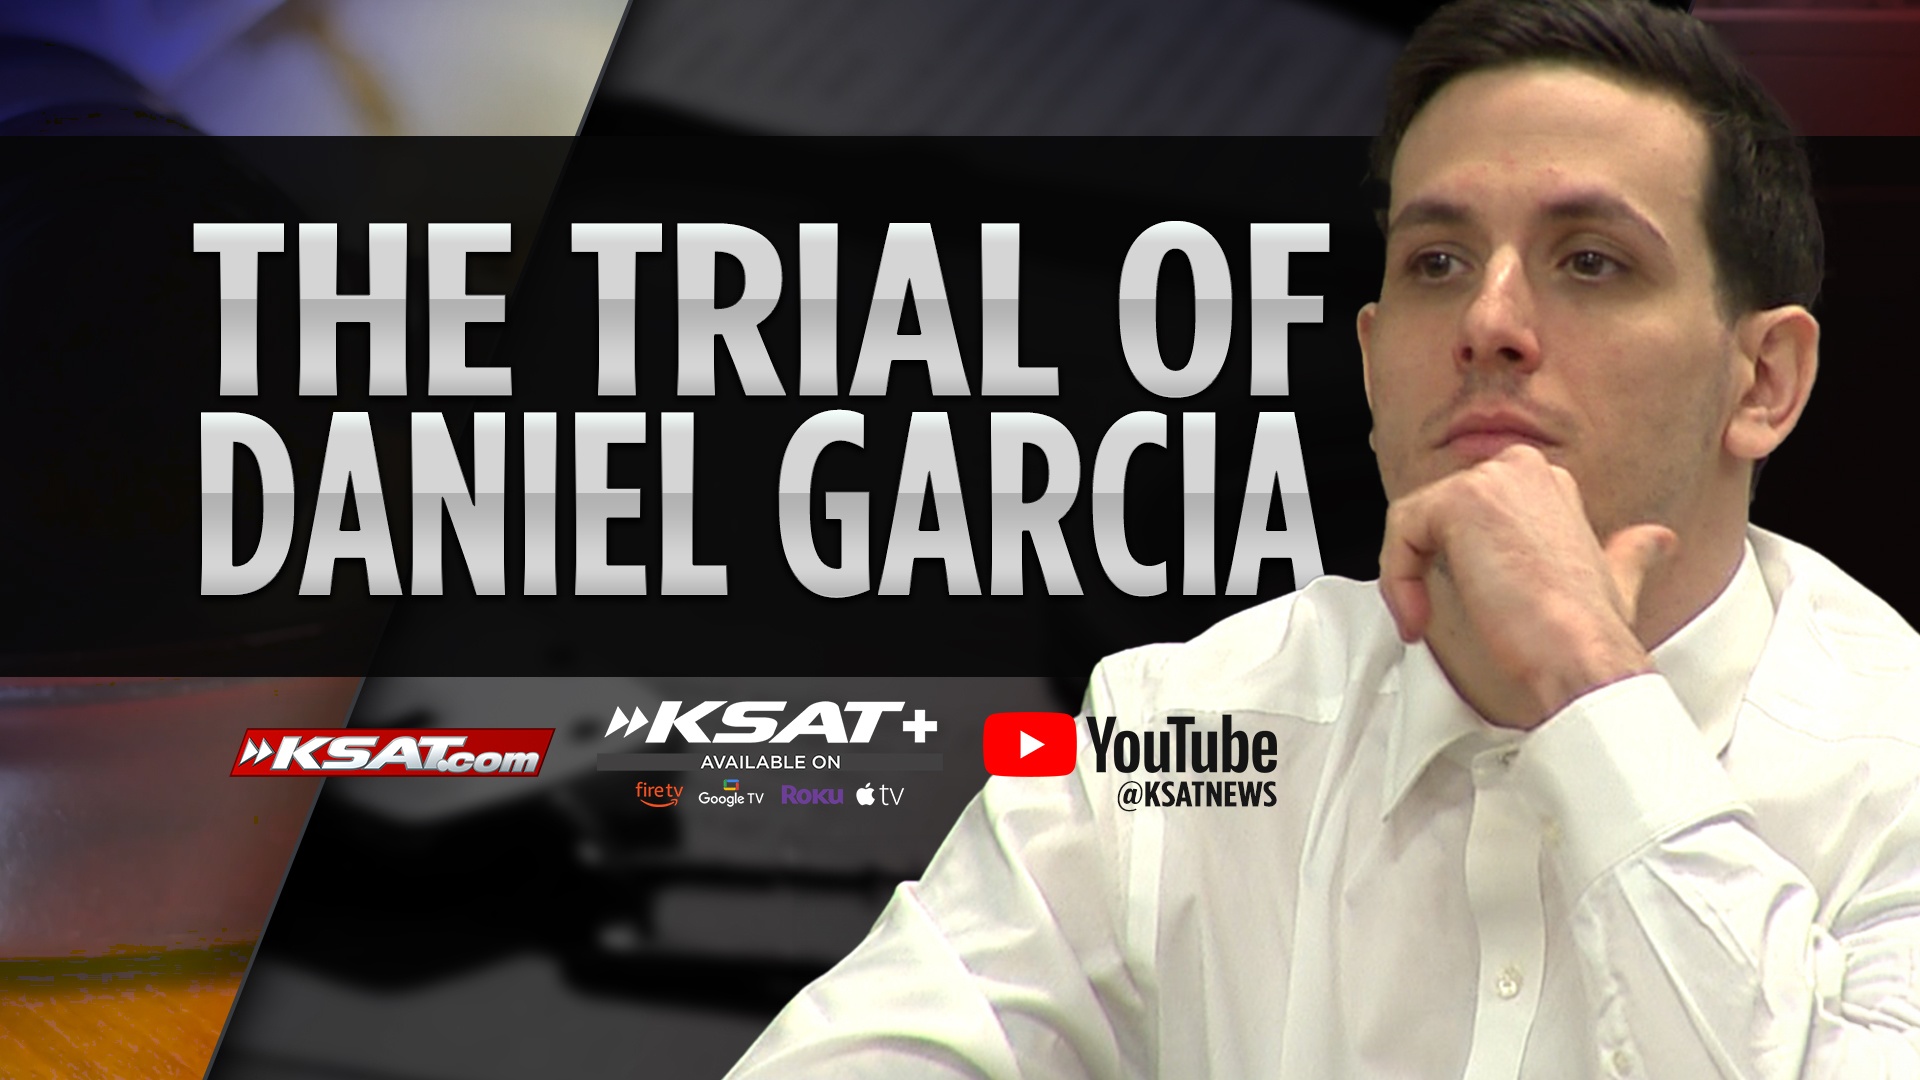 WATCH LIVE: Daniel Garcia on trial for boy's death